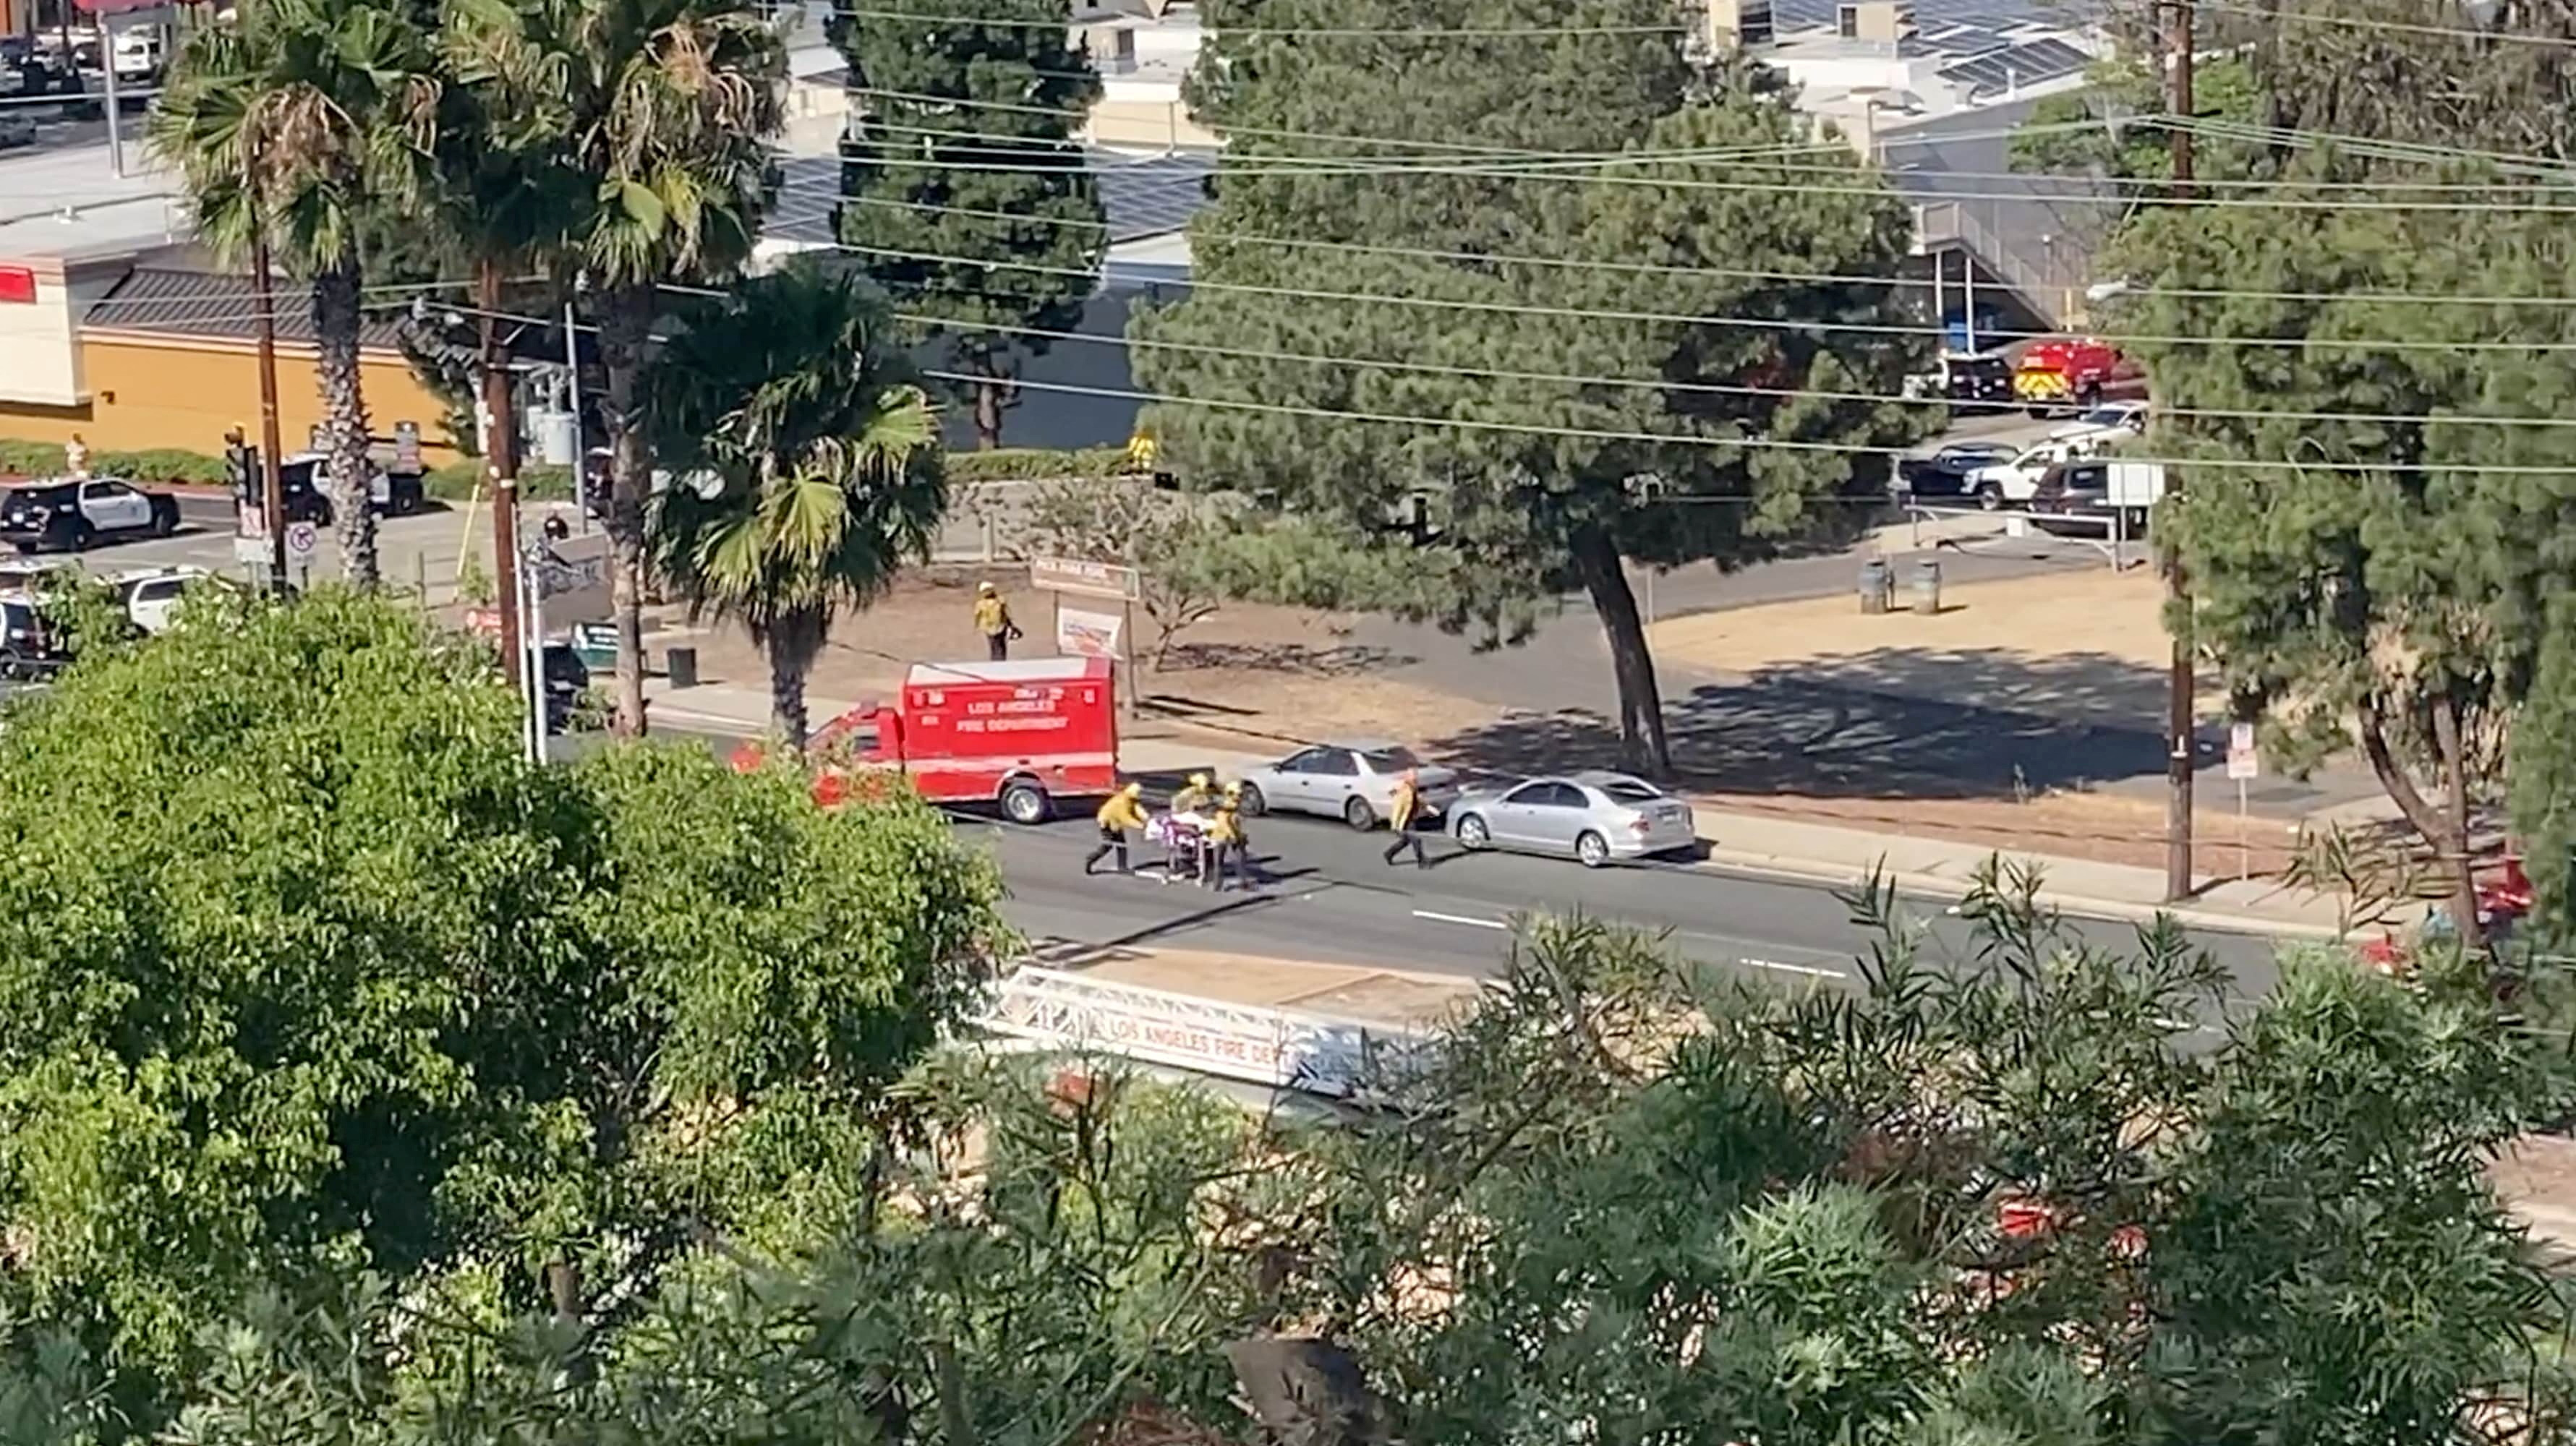 El personal de emergencia carga una camilla luego de un tiroteo en Peck Park, San Pedro, Los Ángeles, California, EEUU